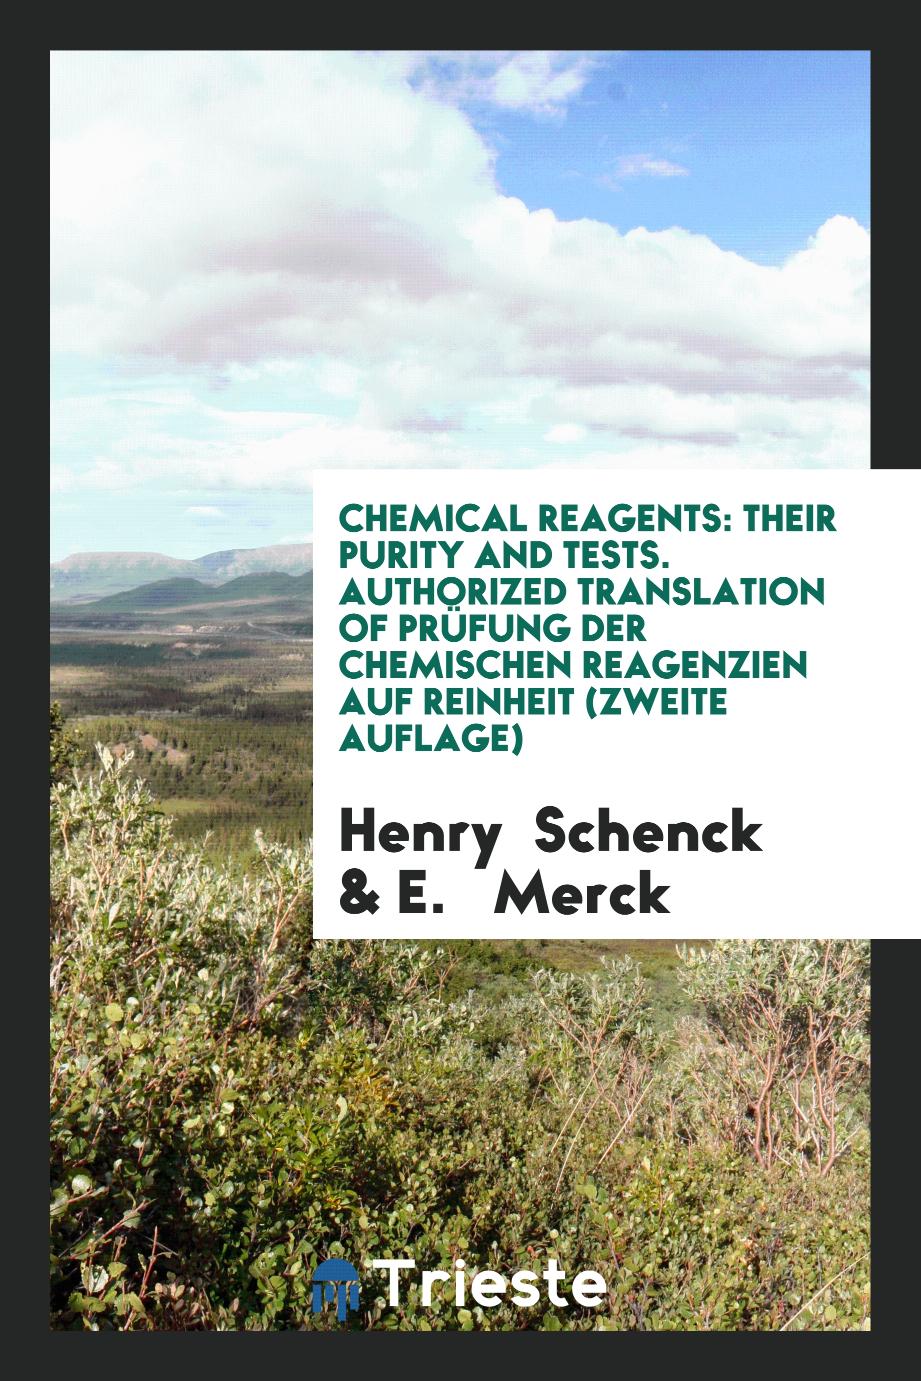 Chemical Reagents: Their Purity and Tests. Authorized Translation of Prüfung der Chemischen Reagenzien auf Reinheit (Zweite Auflage)